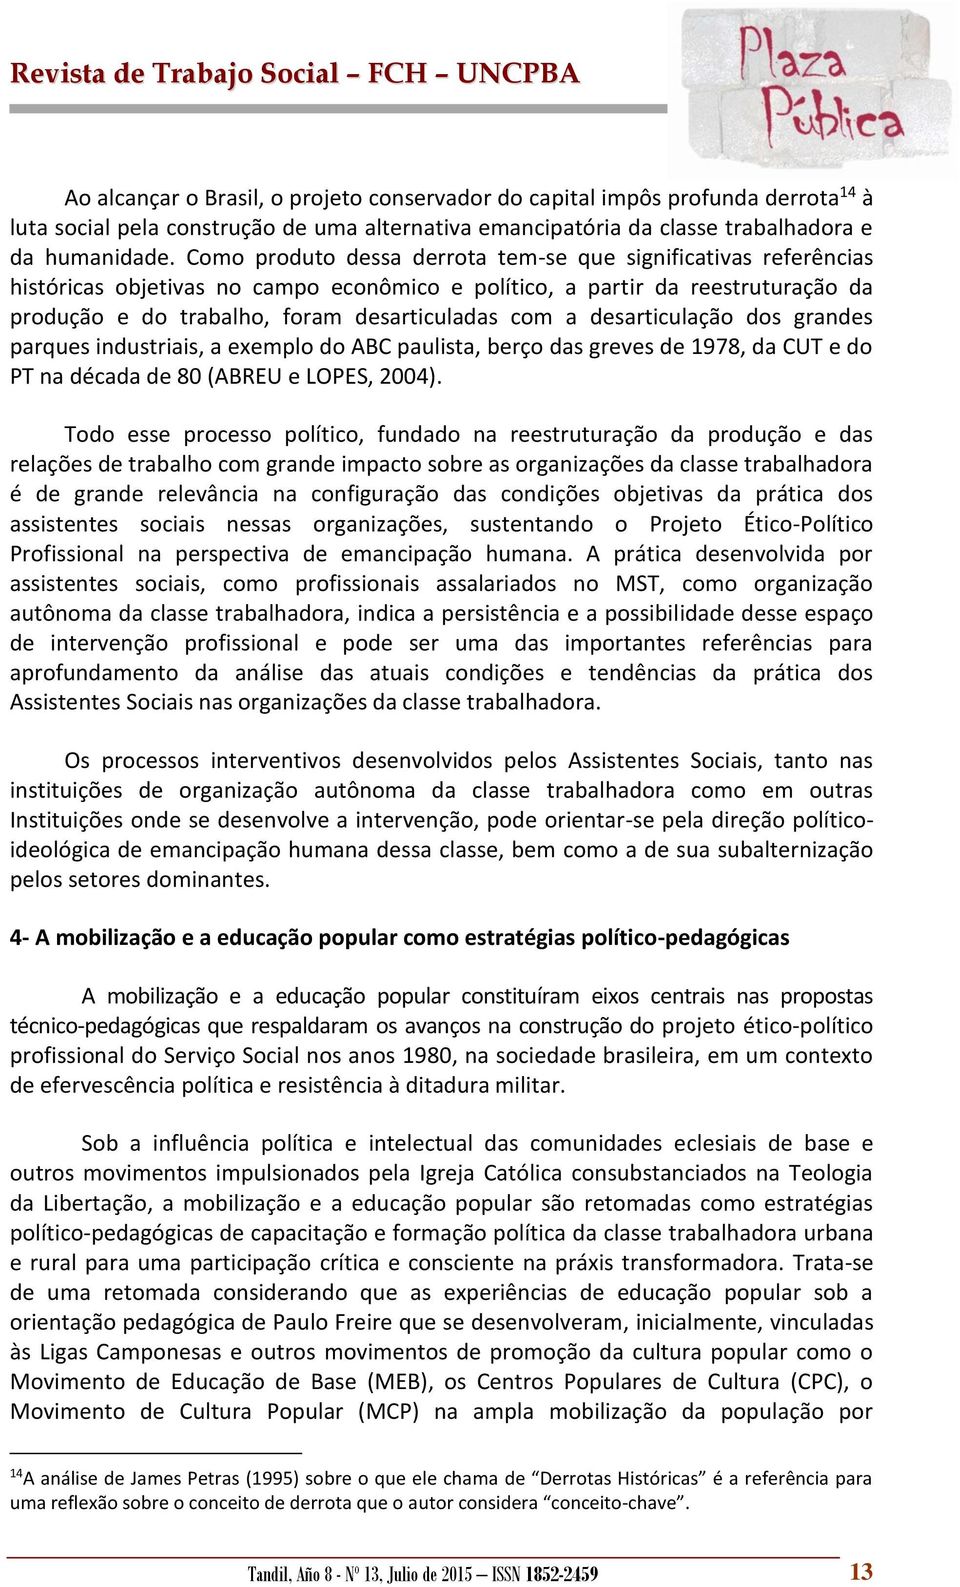 desarticulação dos grandes parques industriais, a exemplo do ABC paulista, berço das greves de 1978, da CUT e do PT na década de 80 (ABREU e LOPES, 2004).